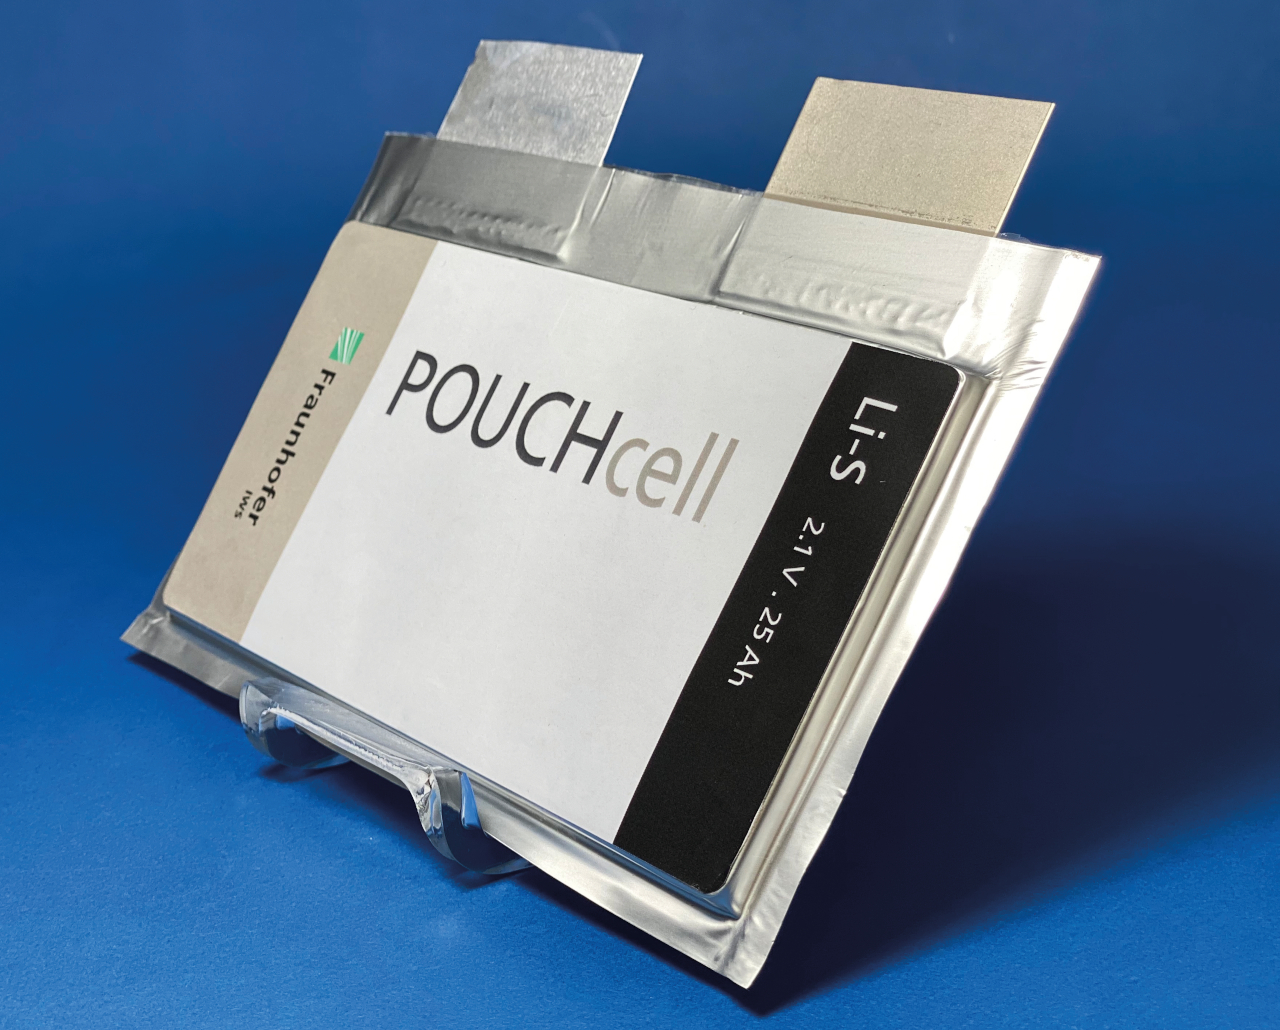 Lithium-Schwefel Pouchzelle.